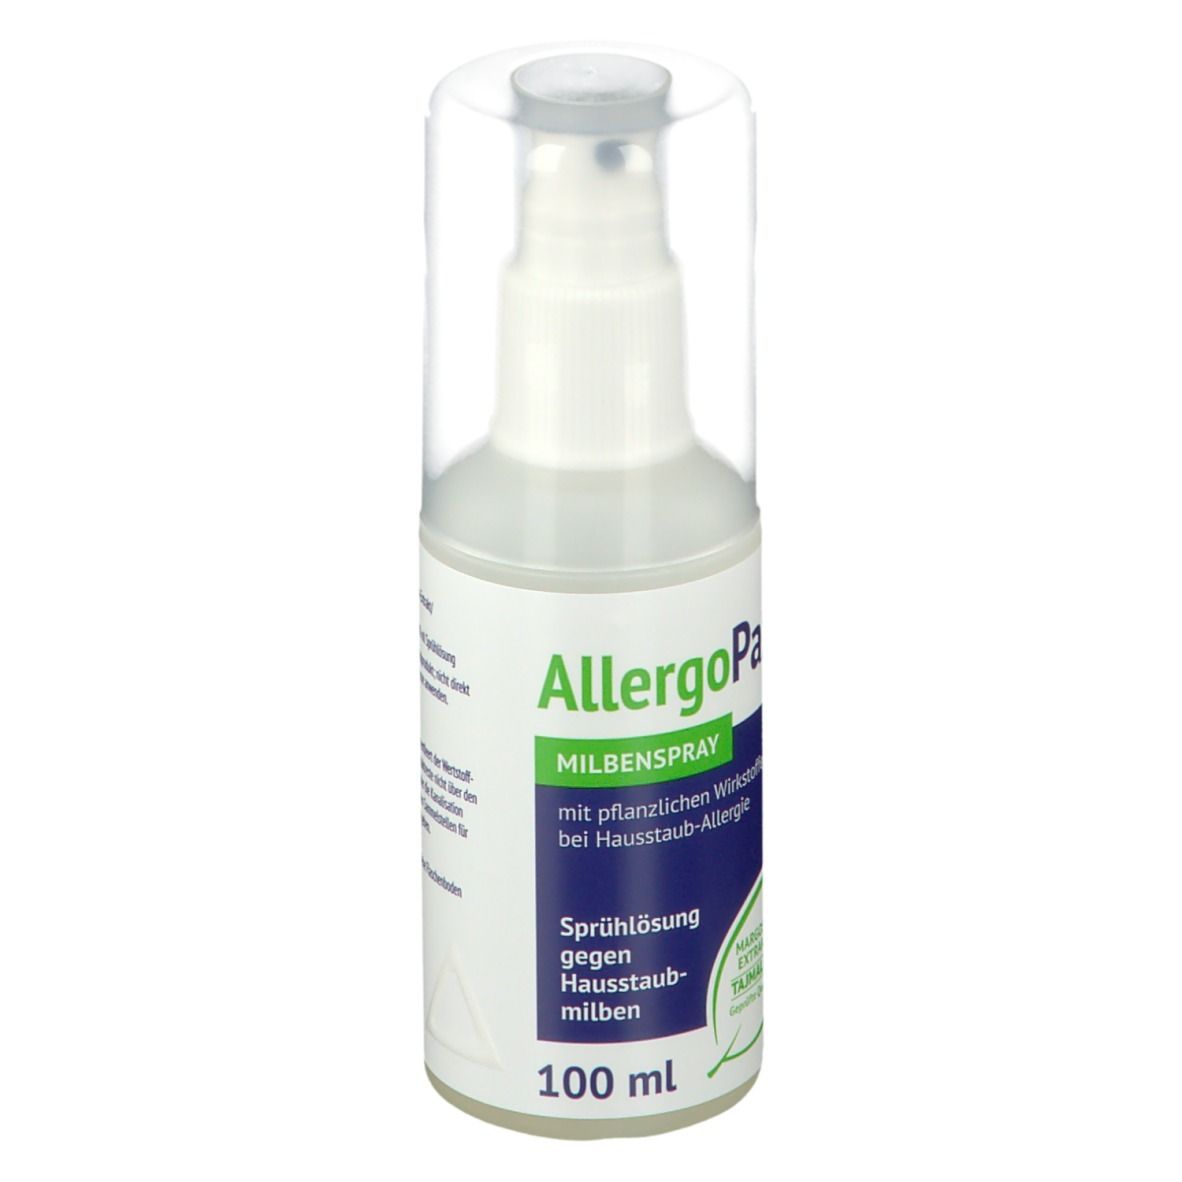 AllergoPax® Milbenspray